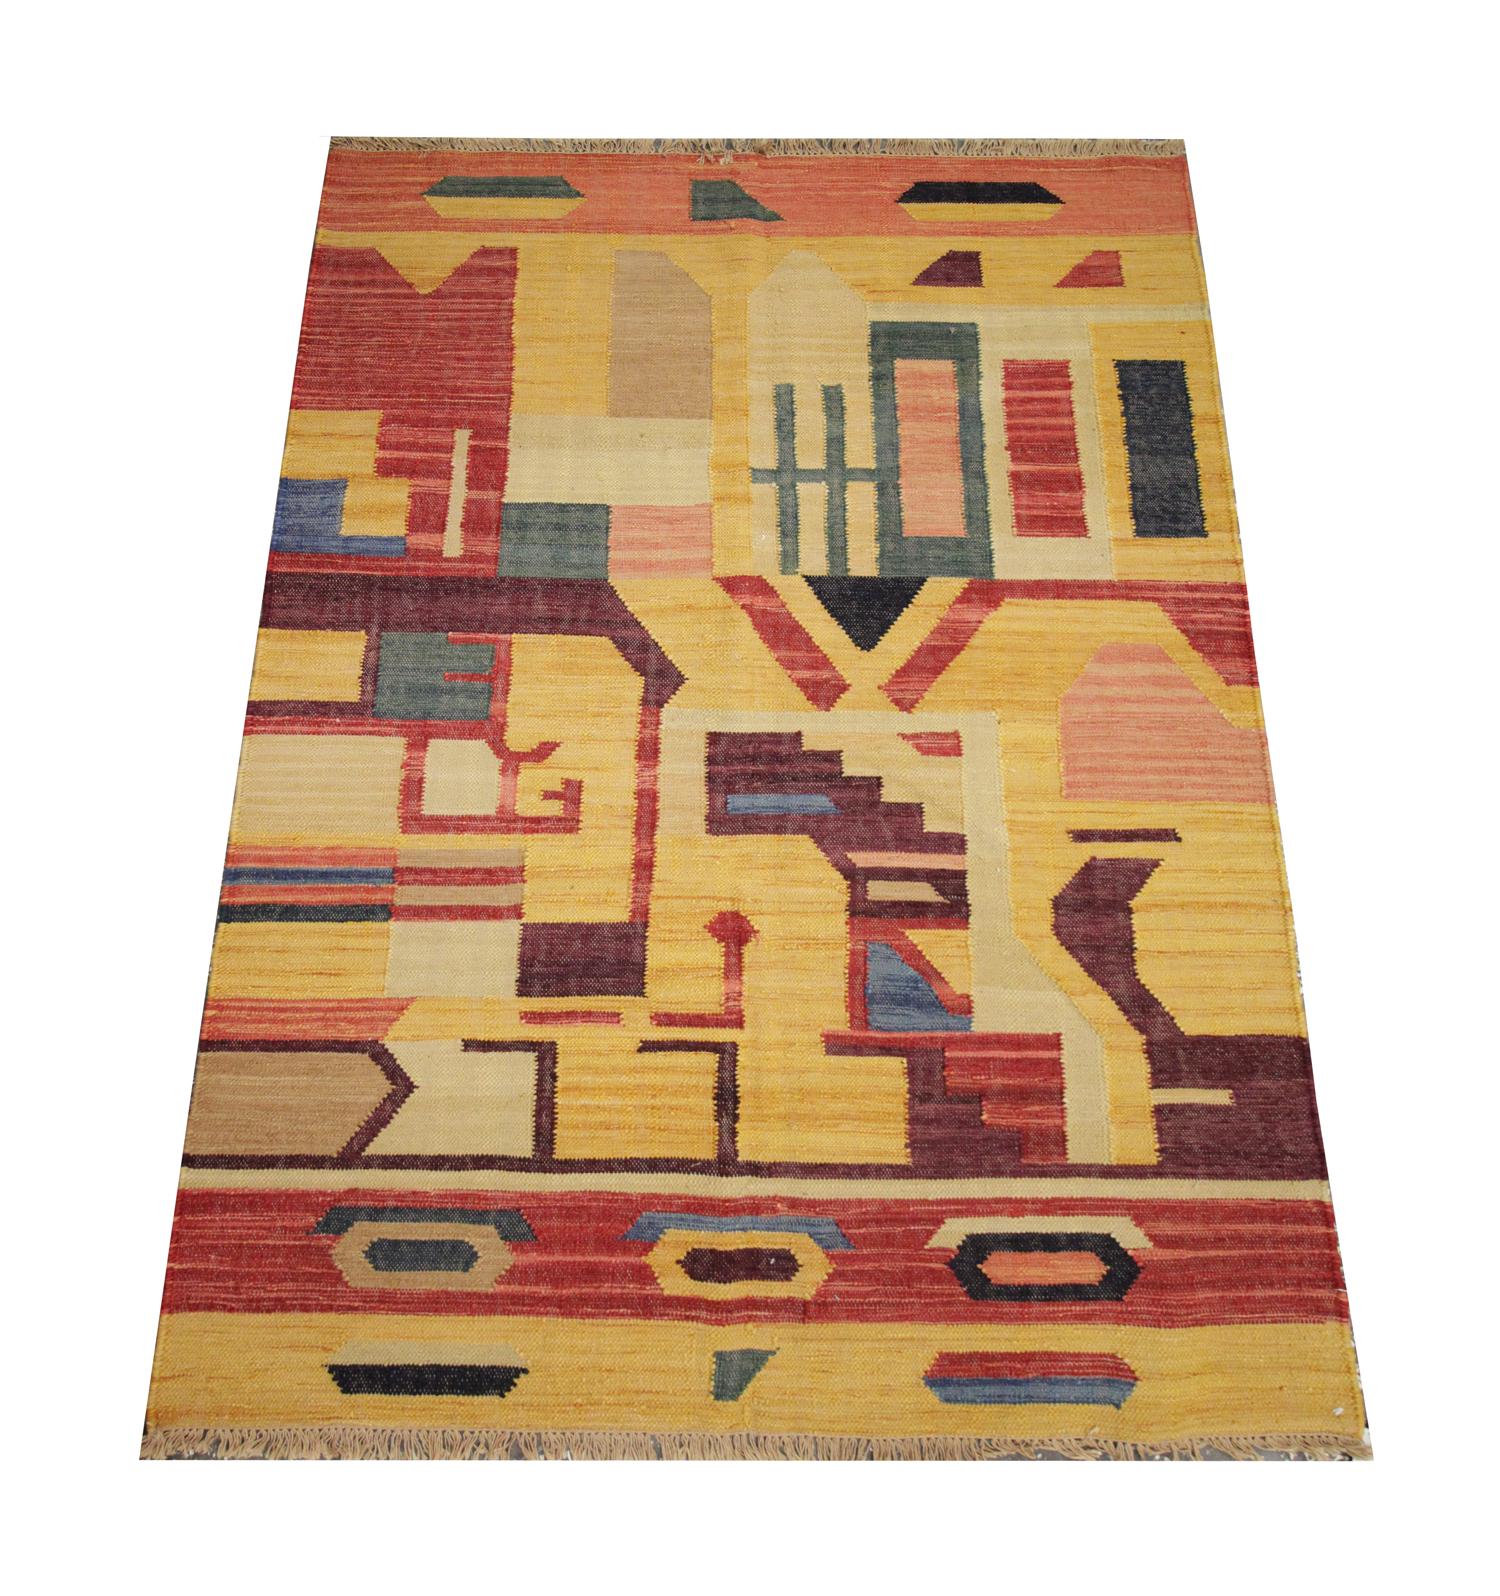 Cette pièce audacieuse et magnifique est un tapis Kilim tissé à la main, construit avec une palette de couleurs vibrantes, dont l'orange, le jaune, le rouge et le bleu, qui composent le design abstrait accrocheur. Les formes géométriques sont